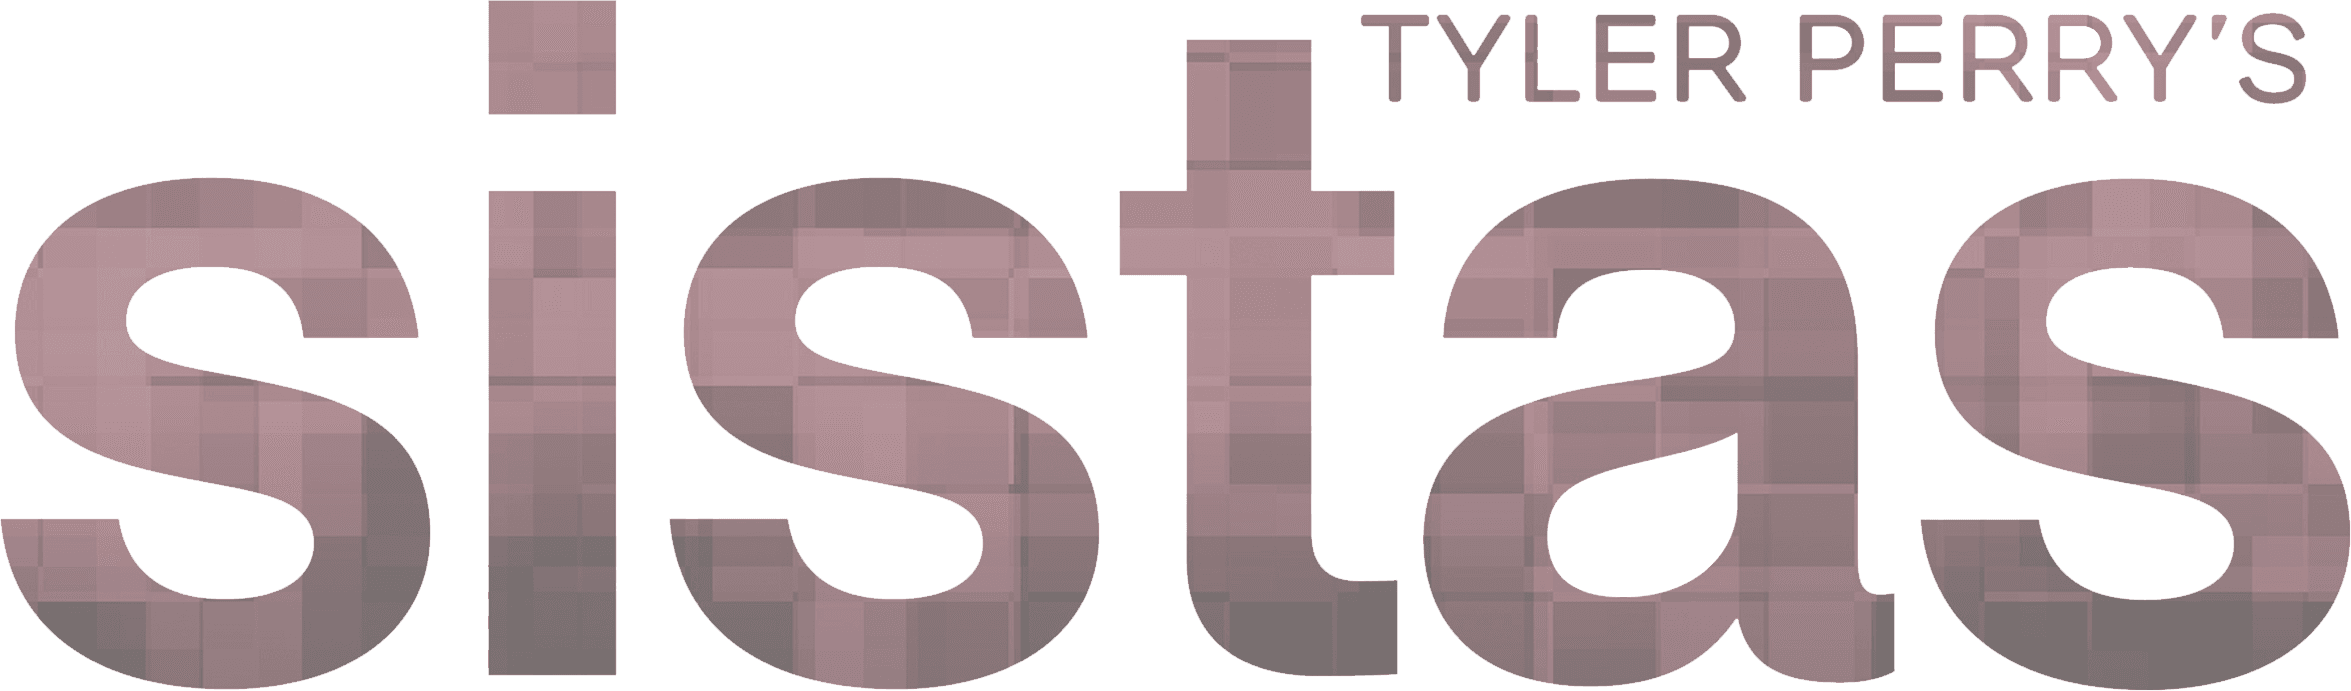 Tyler Perry's Sistas logo